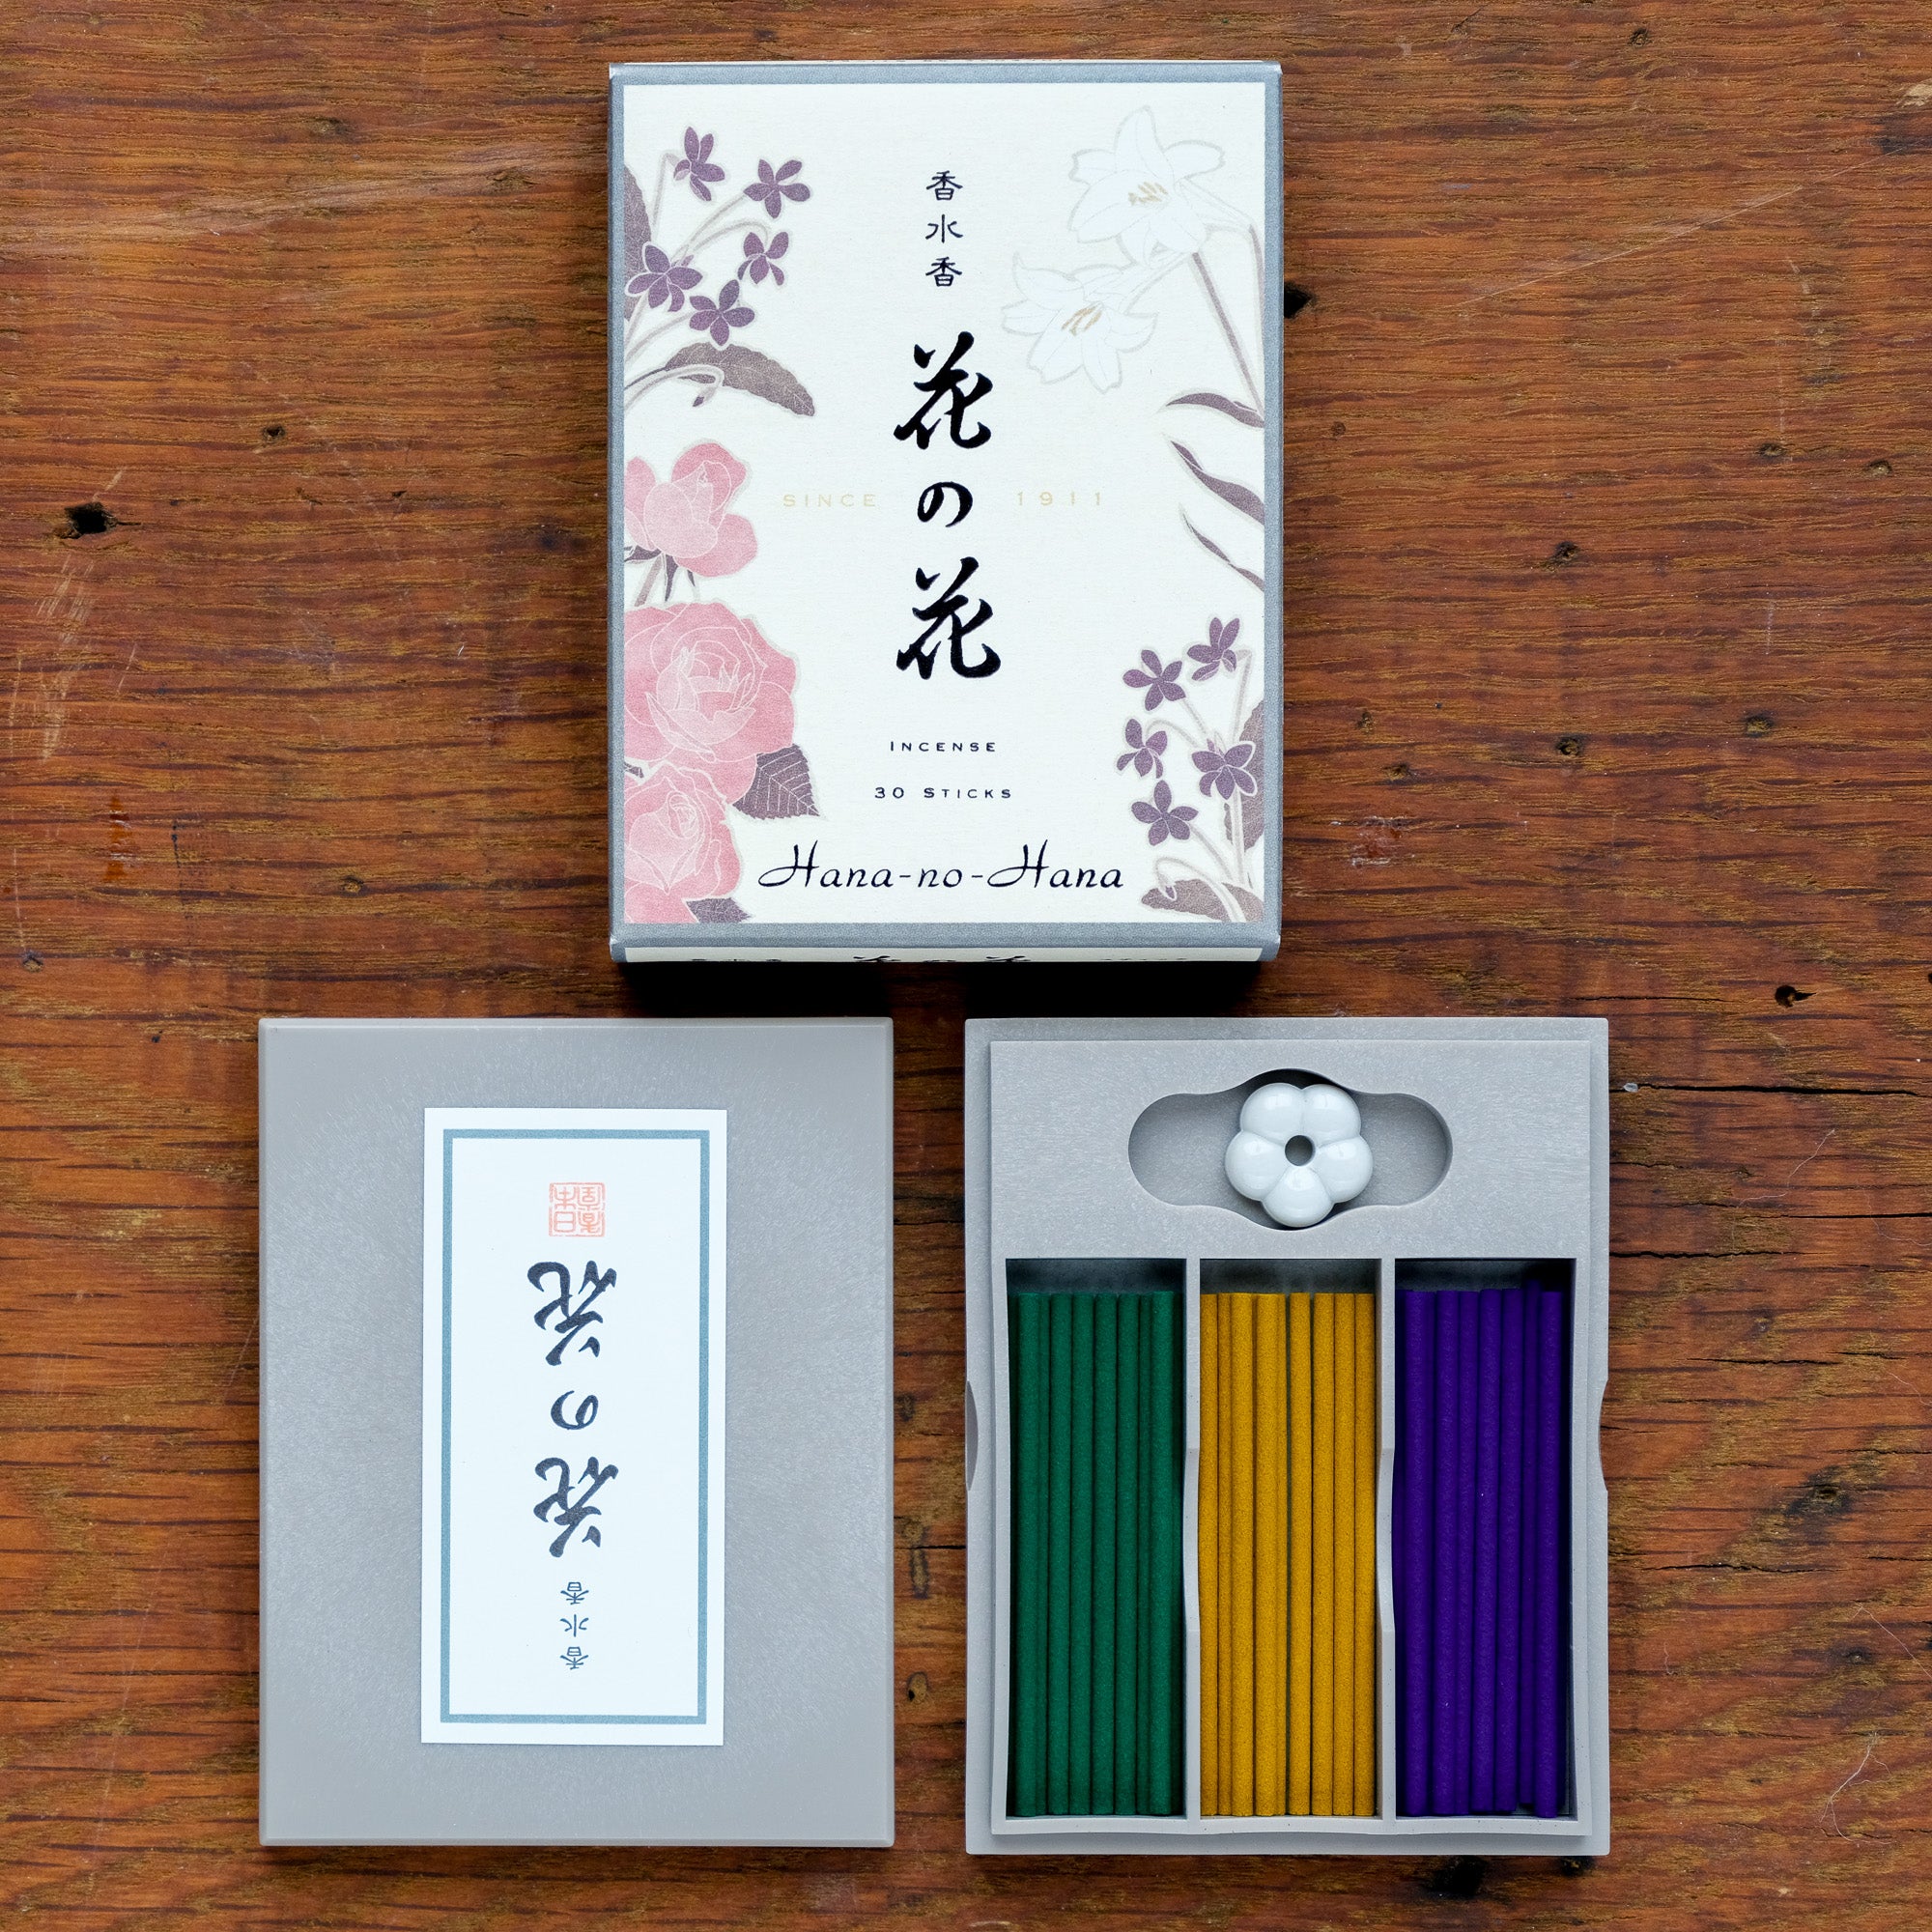 Hana-no-hana Floral Japanese Incense Boxed Set